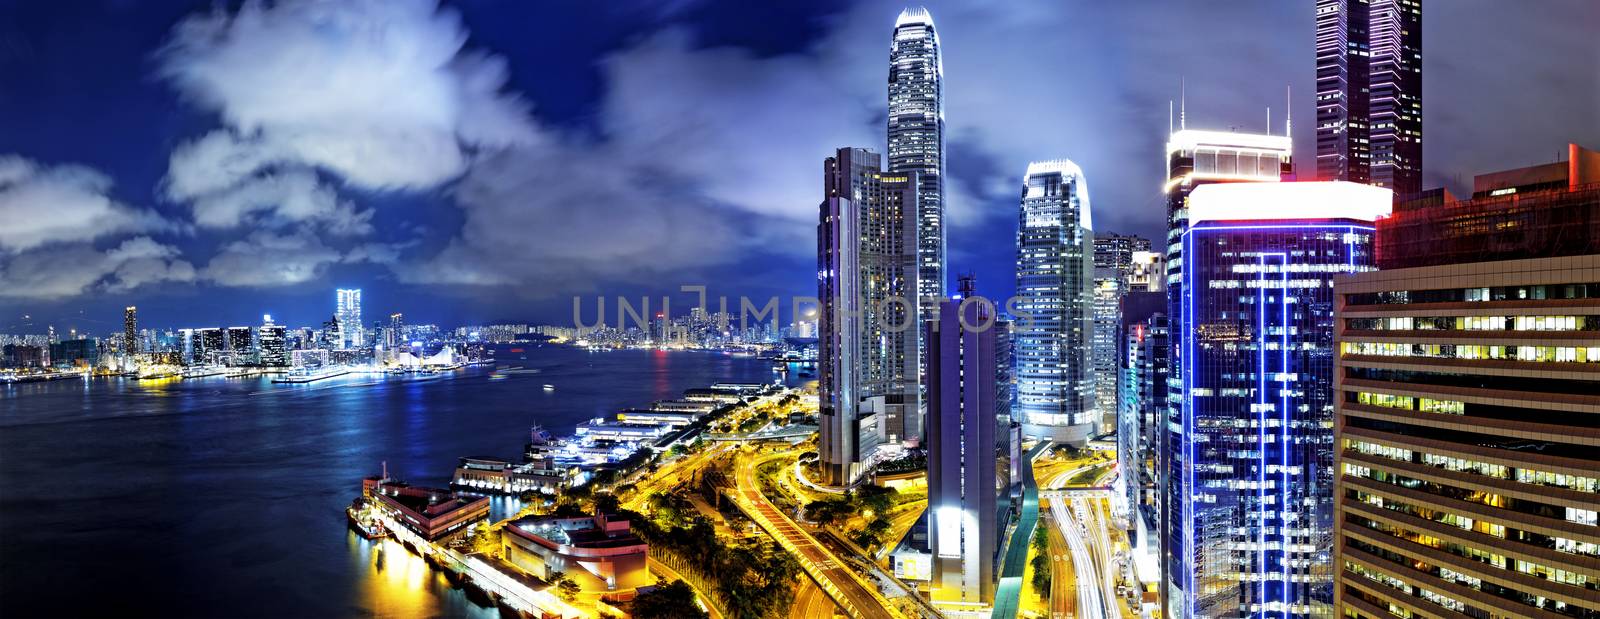 Hong Kong Skylines at finance zone at night